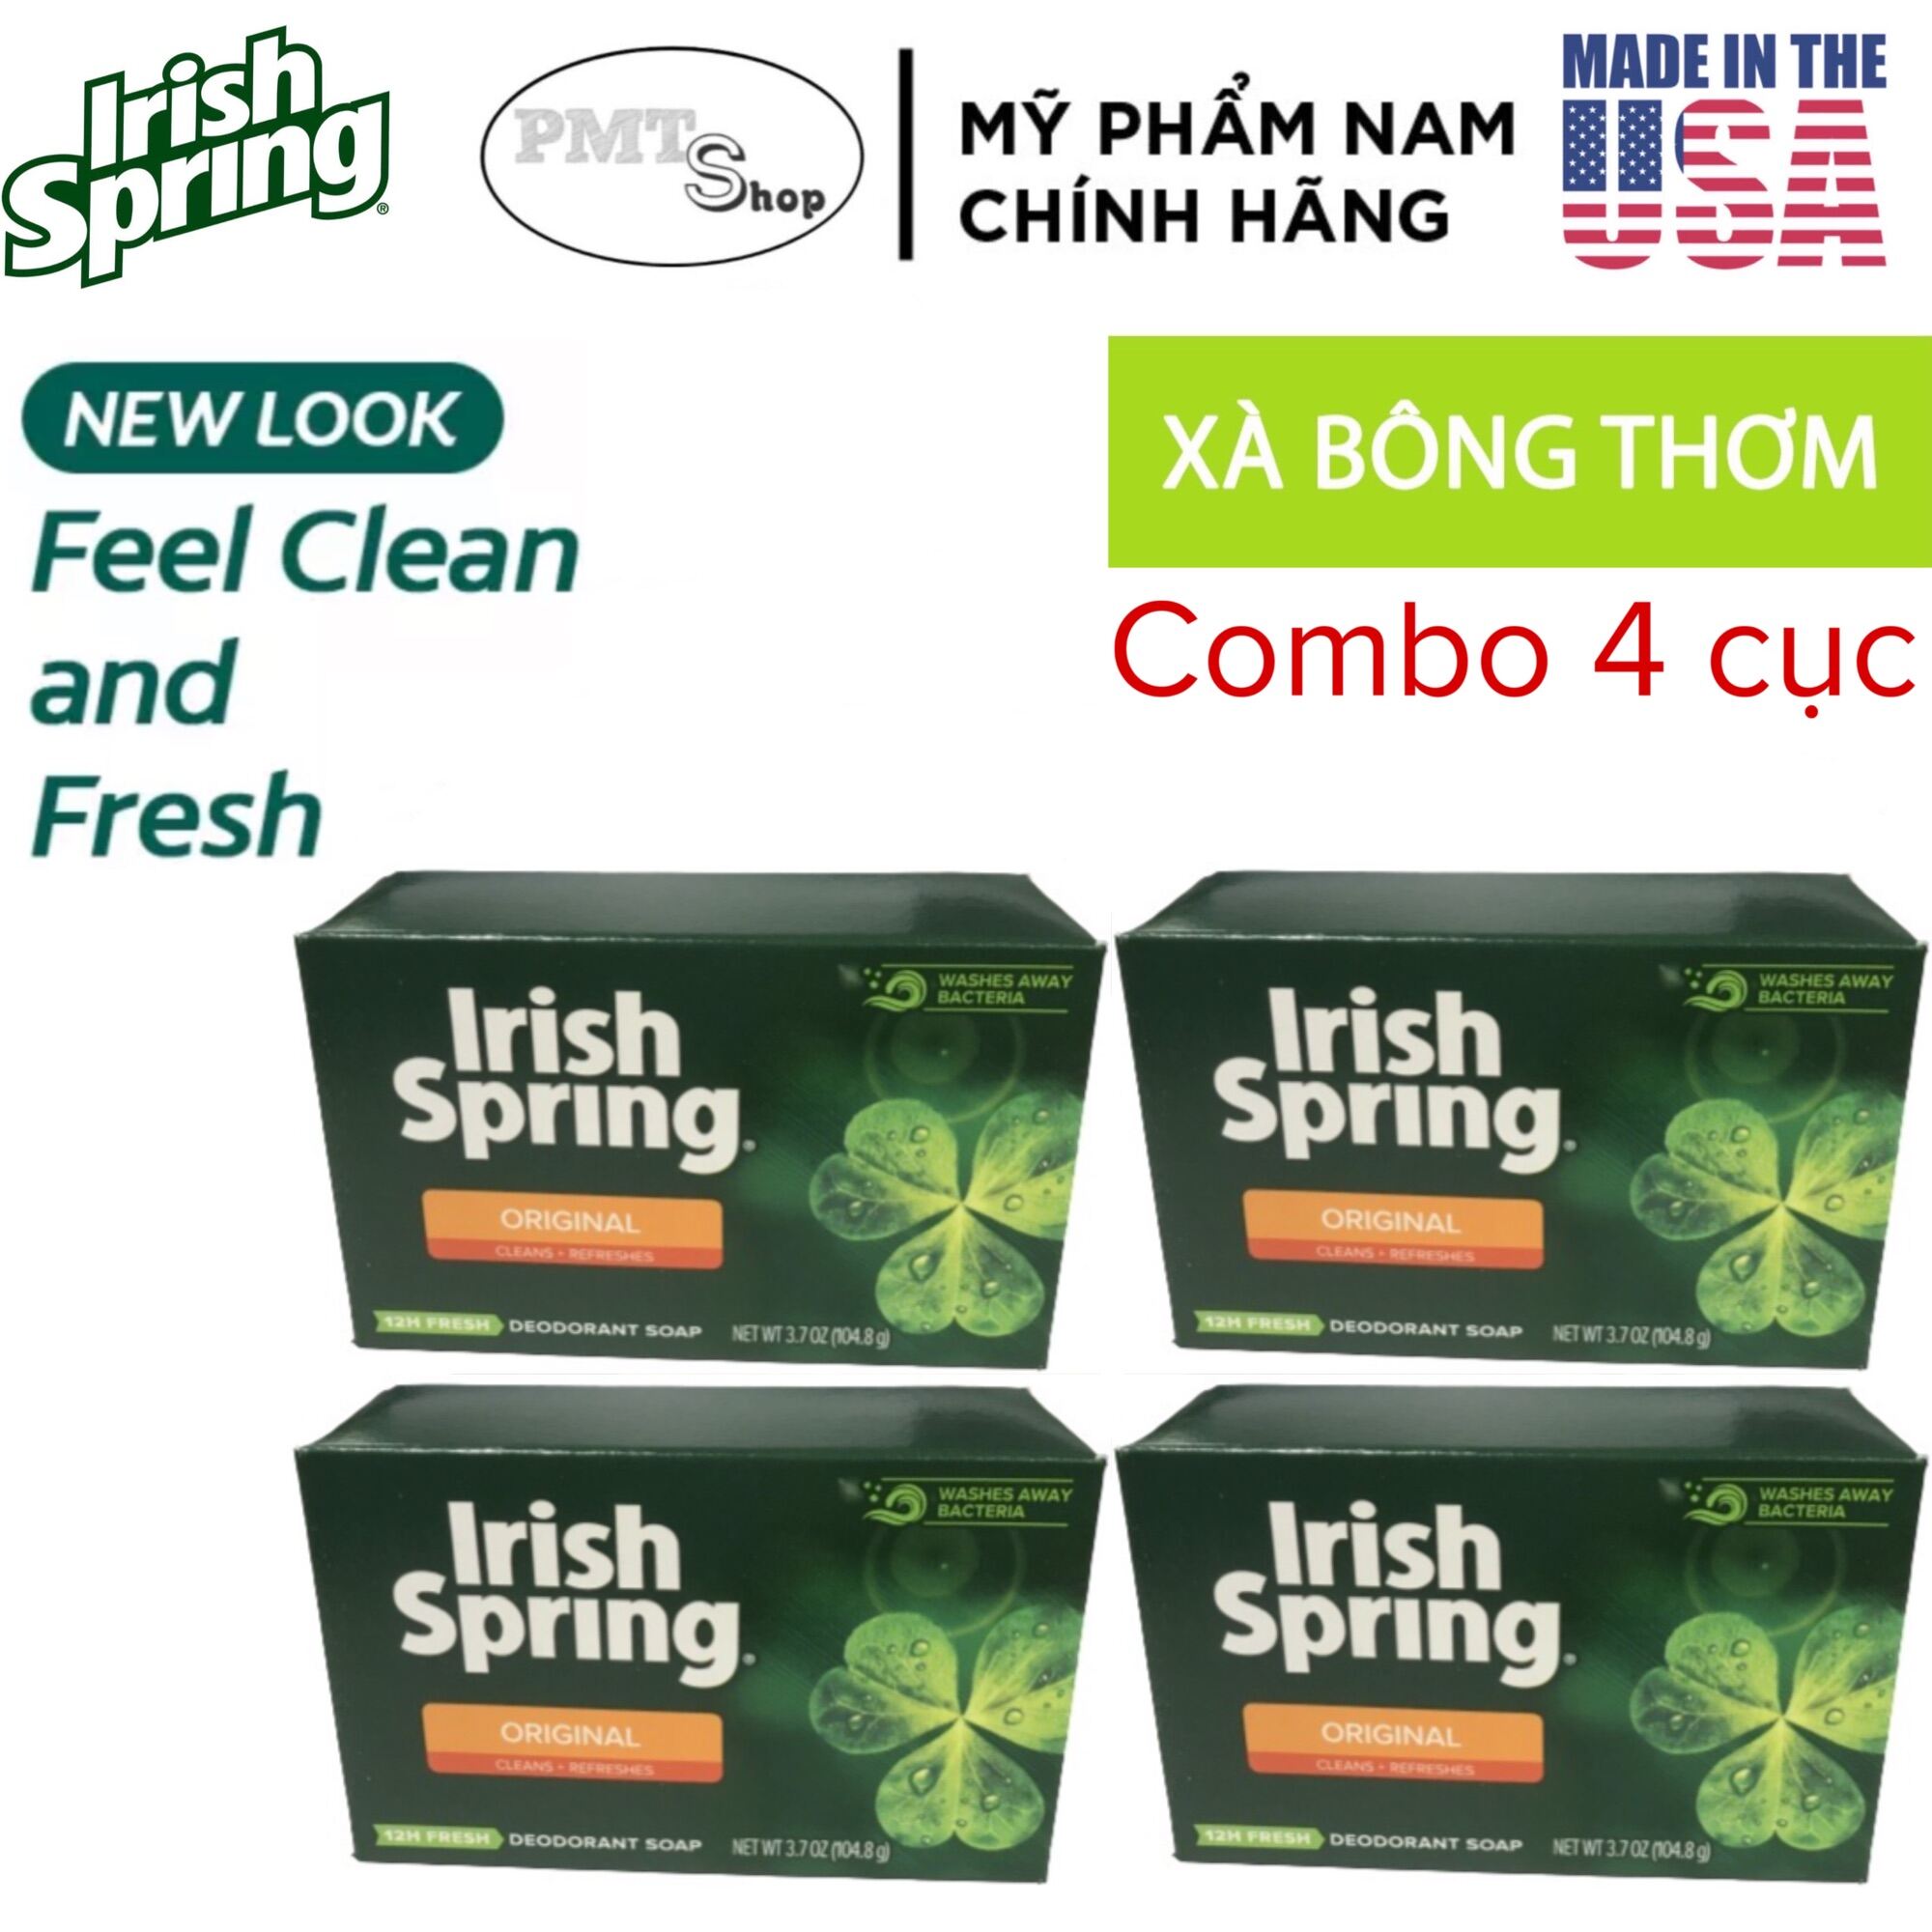 Combo 4 cục xà bông thơm IRISH SPRING Orginal Fell Clean And Fresh thumbnail